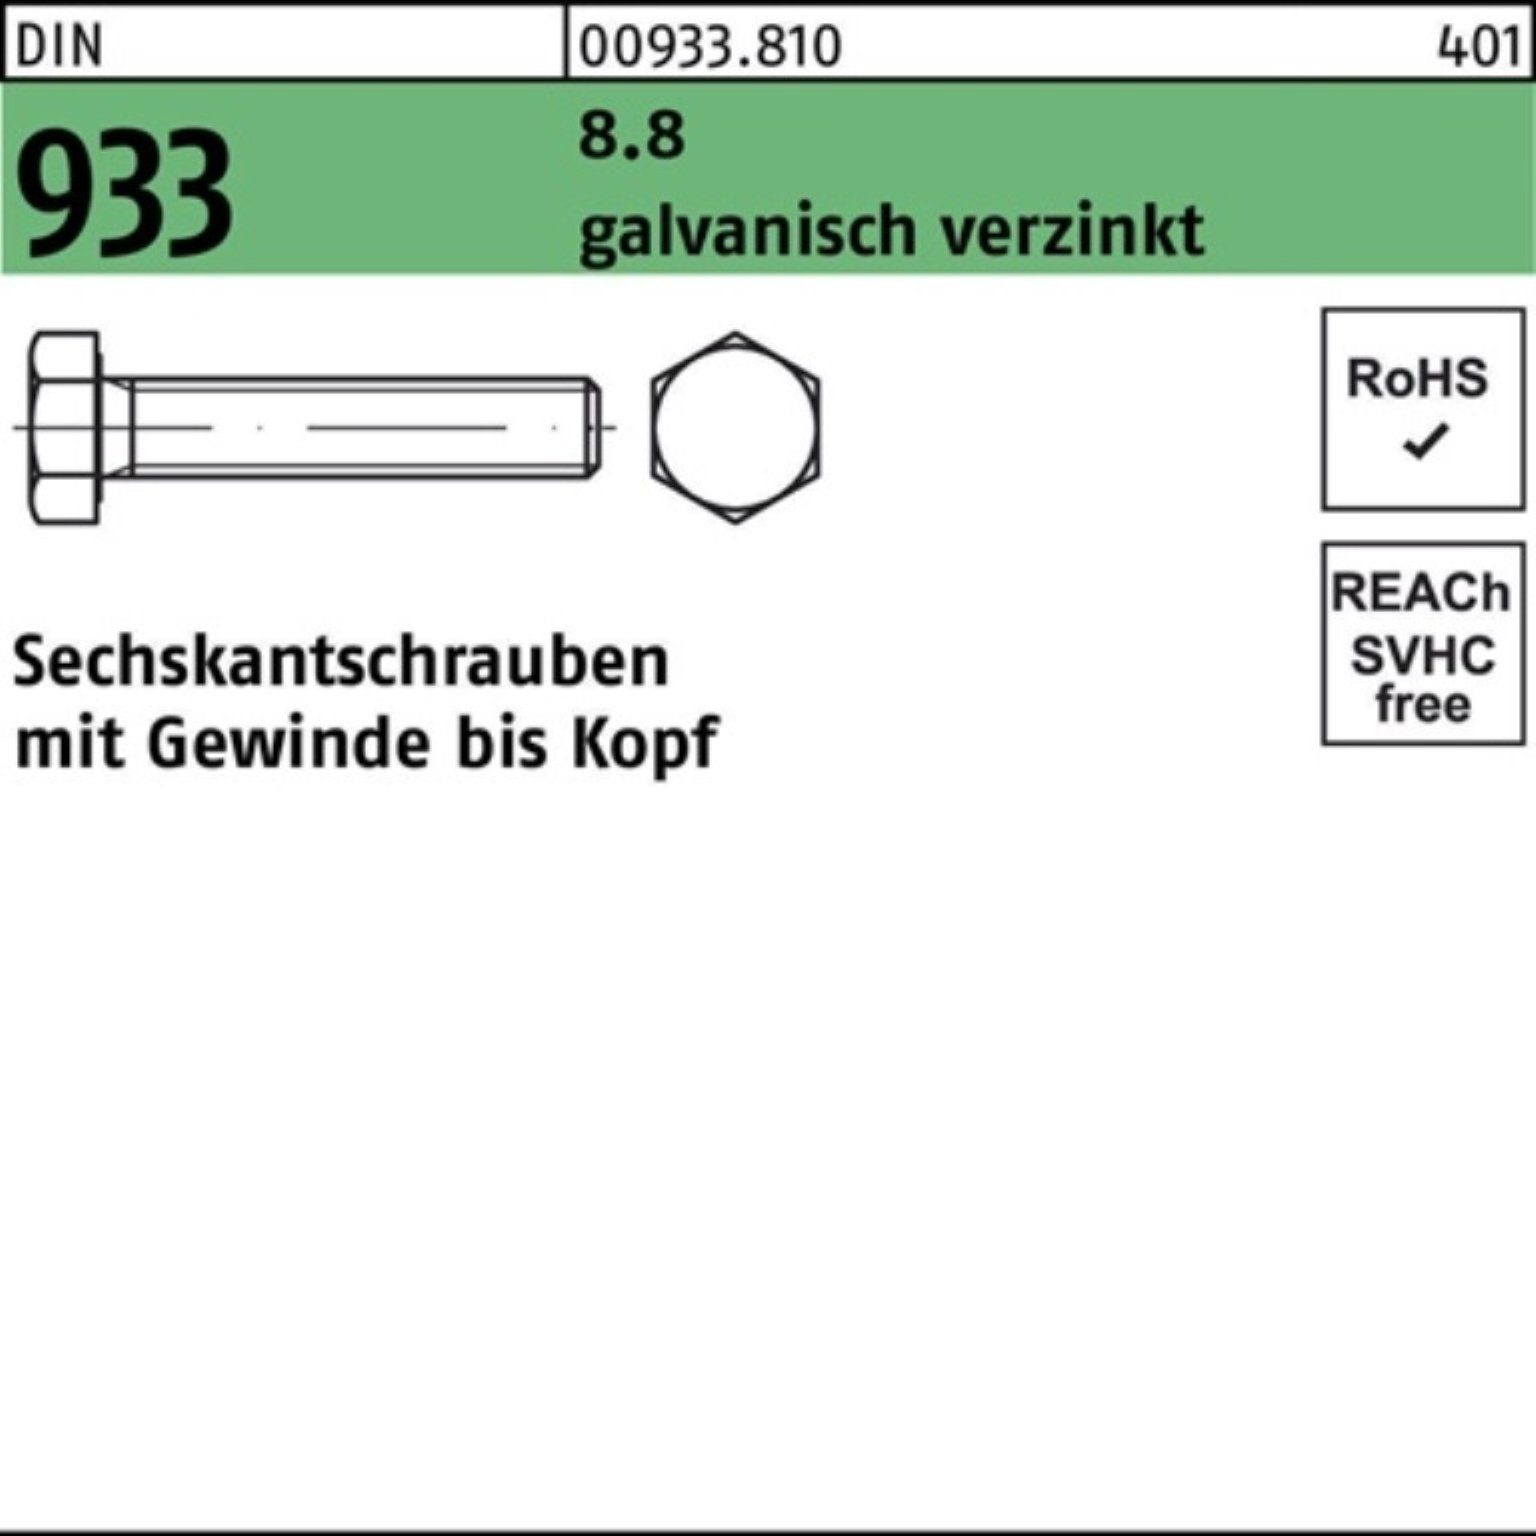 bestbewertet Reyher Sechskantschraube DIN Stü 190 Pack M33x 933 1 8.8 VG galv.verz. Sechskantschraube 100er